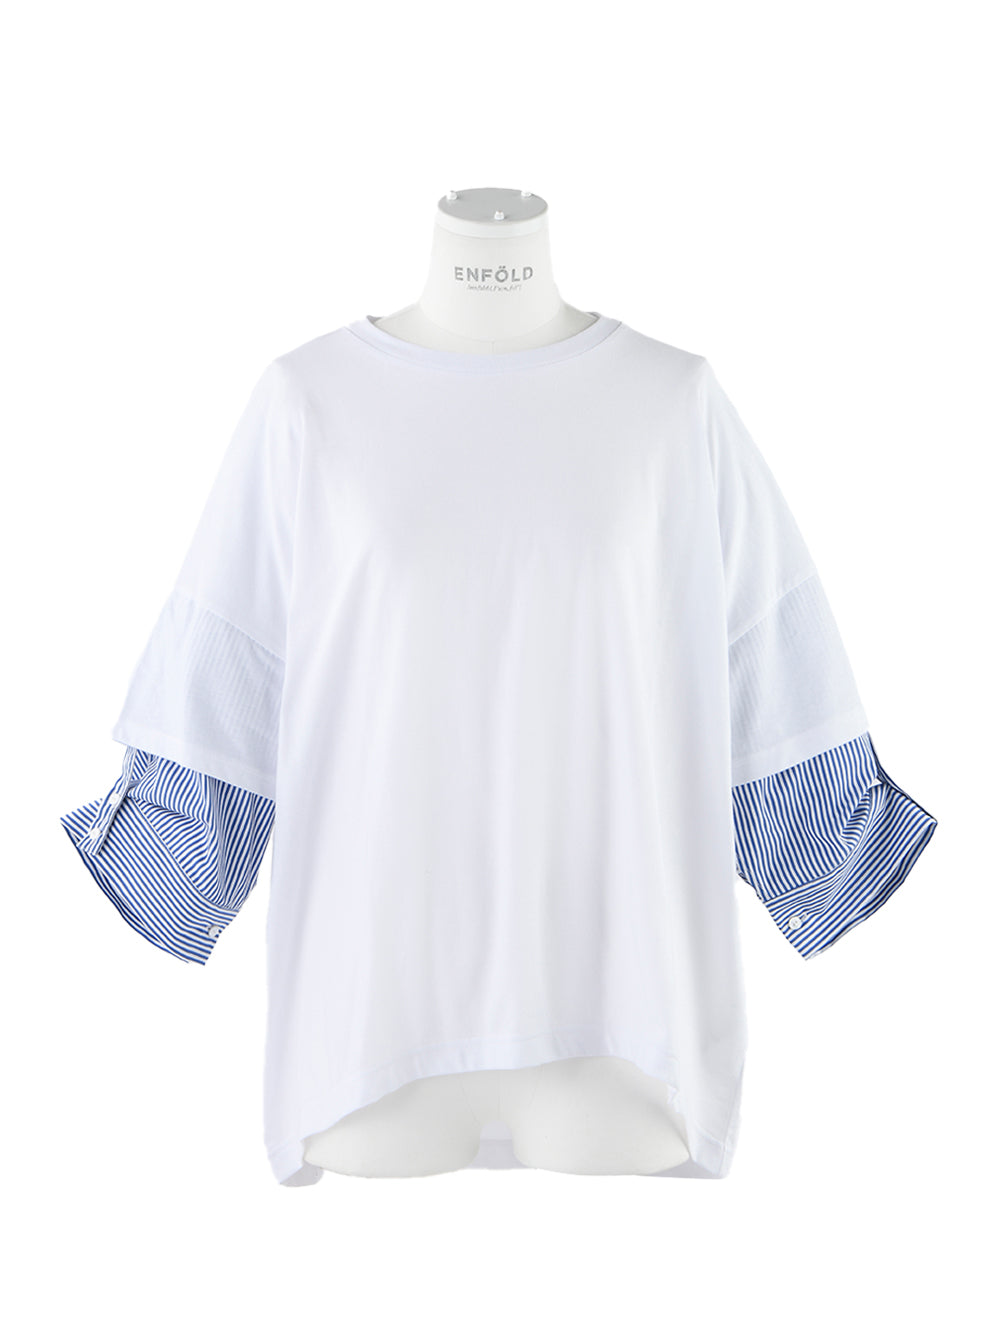 Shirt Layered T-Shirt (White)